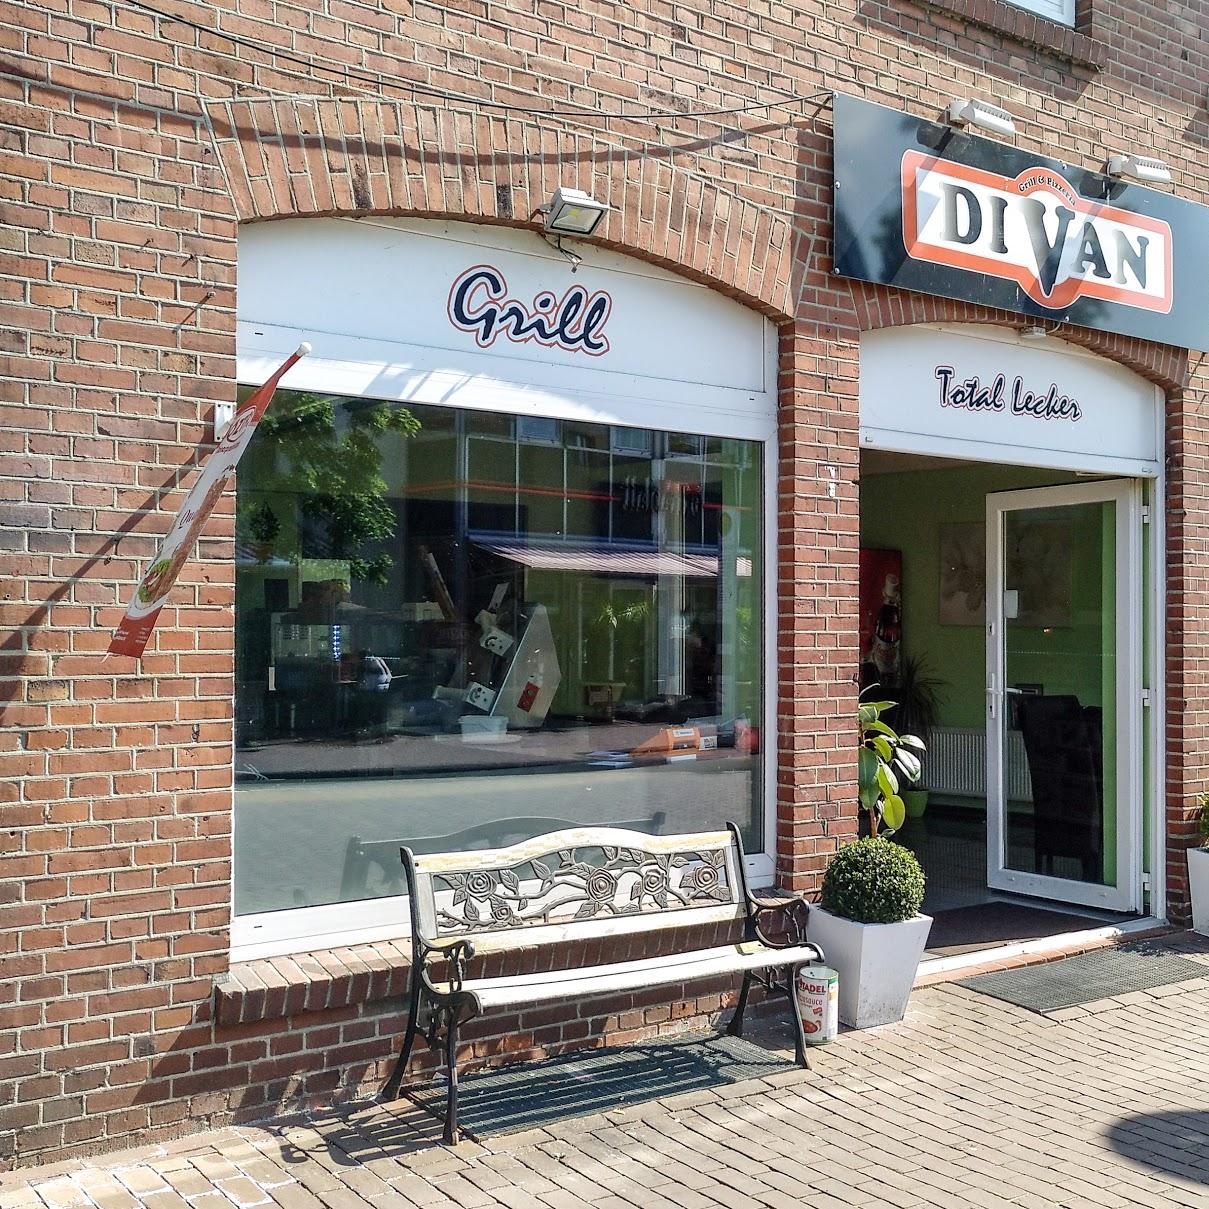 Restaurant "Divan" in Nordhorn